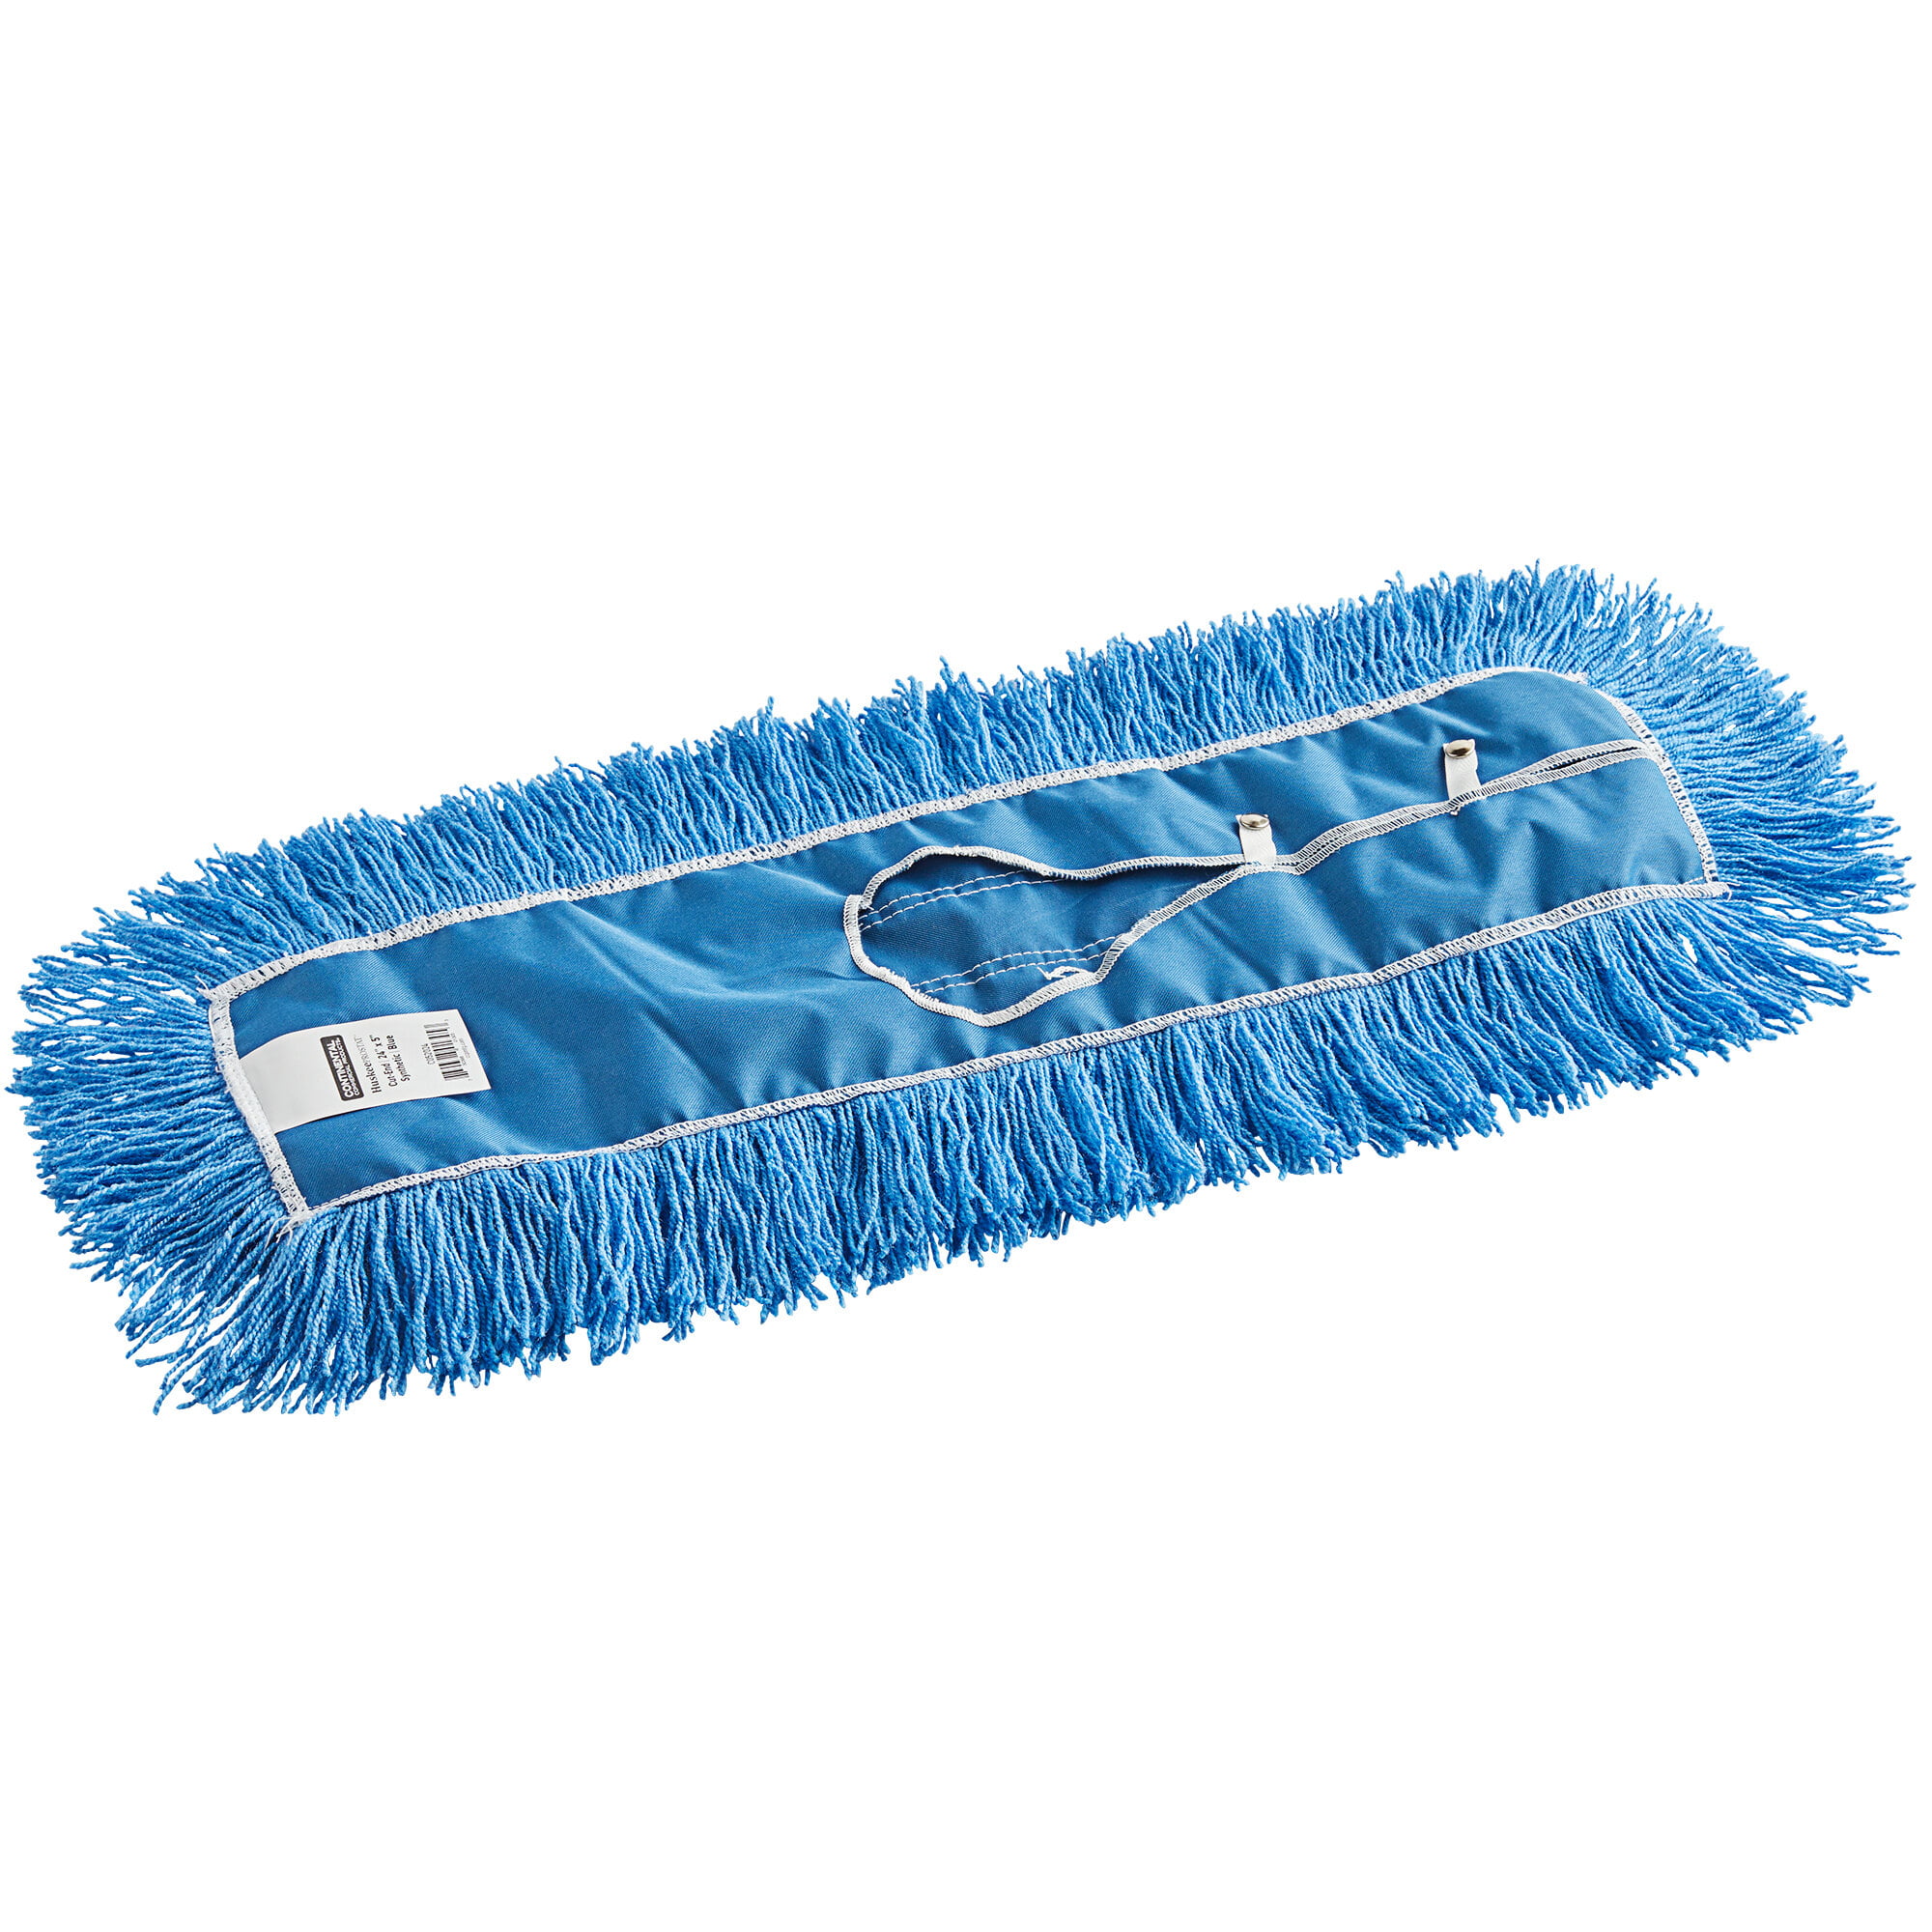 TOUGH GUY 1TZC5 Dust Mop,Blue,24" 